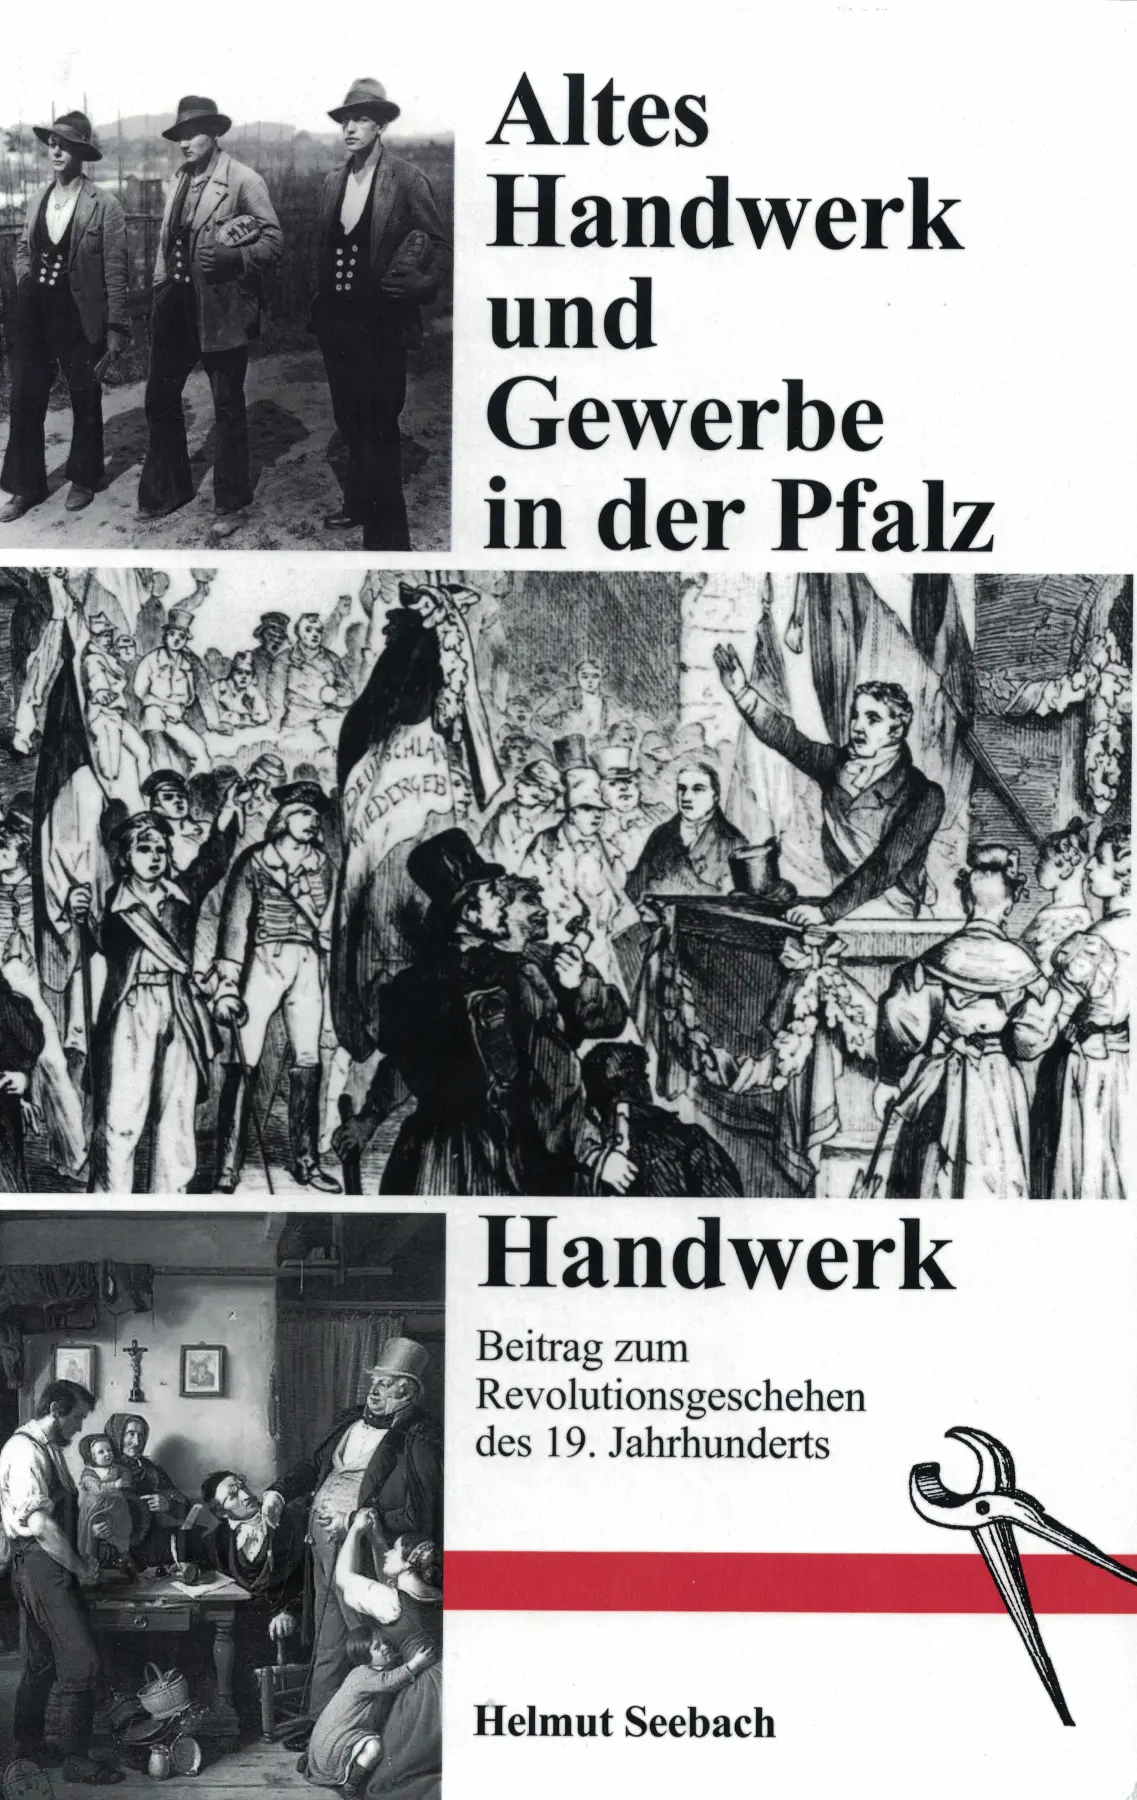 Altes Handwerk und Gewerbe in der Pfalz. Band 4.